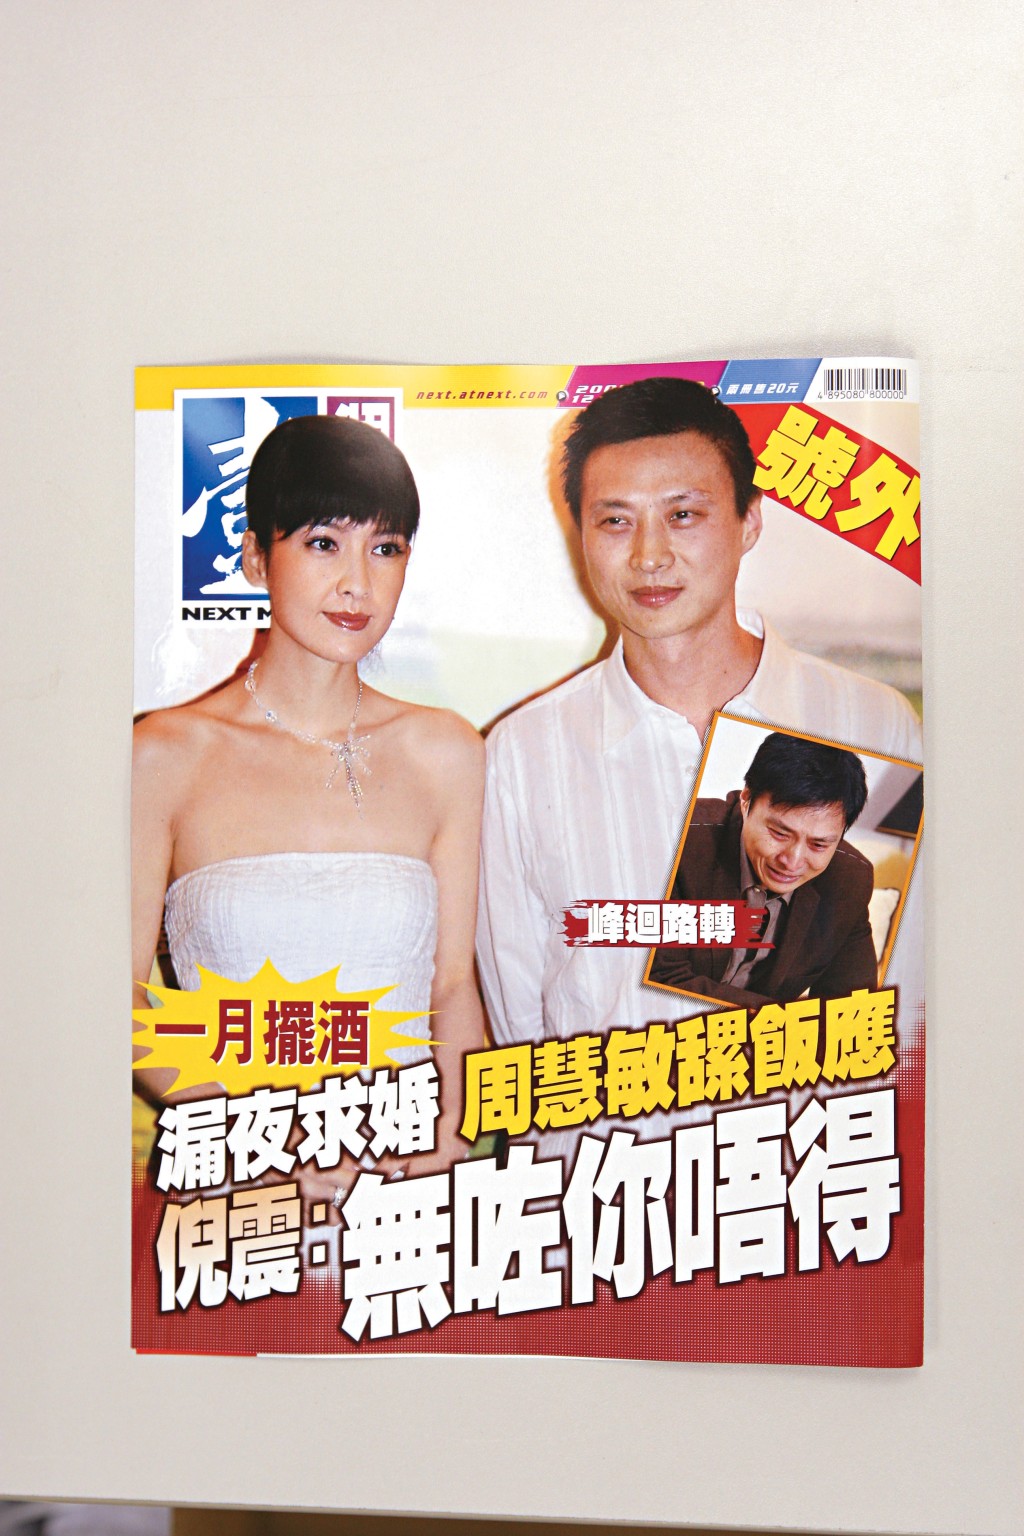 《壹周刊》不时出号外，图为2008年以倪震偷食事件断正后，与周慧敏复合结婚为题。